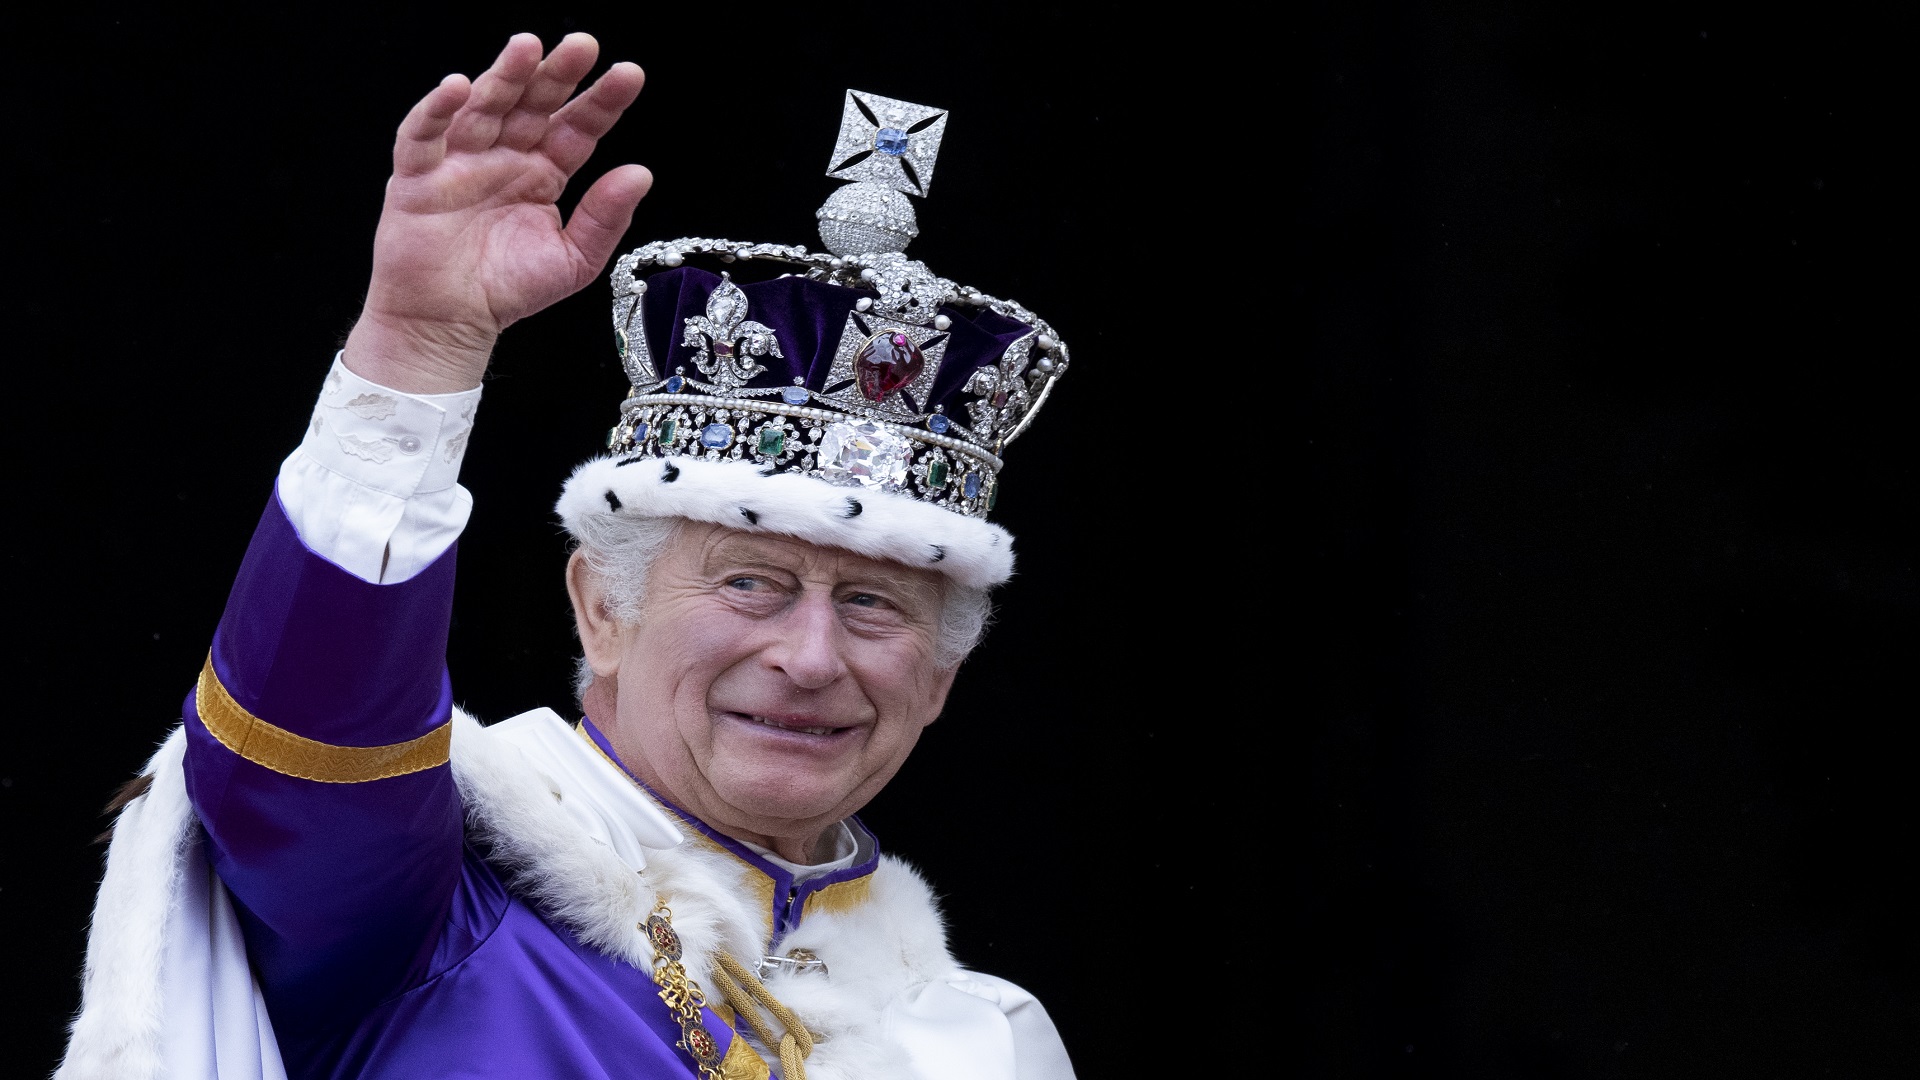 Egy új korszak kezdődött: vajon III. Károly lesz a reformer király?